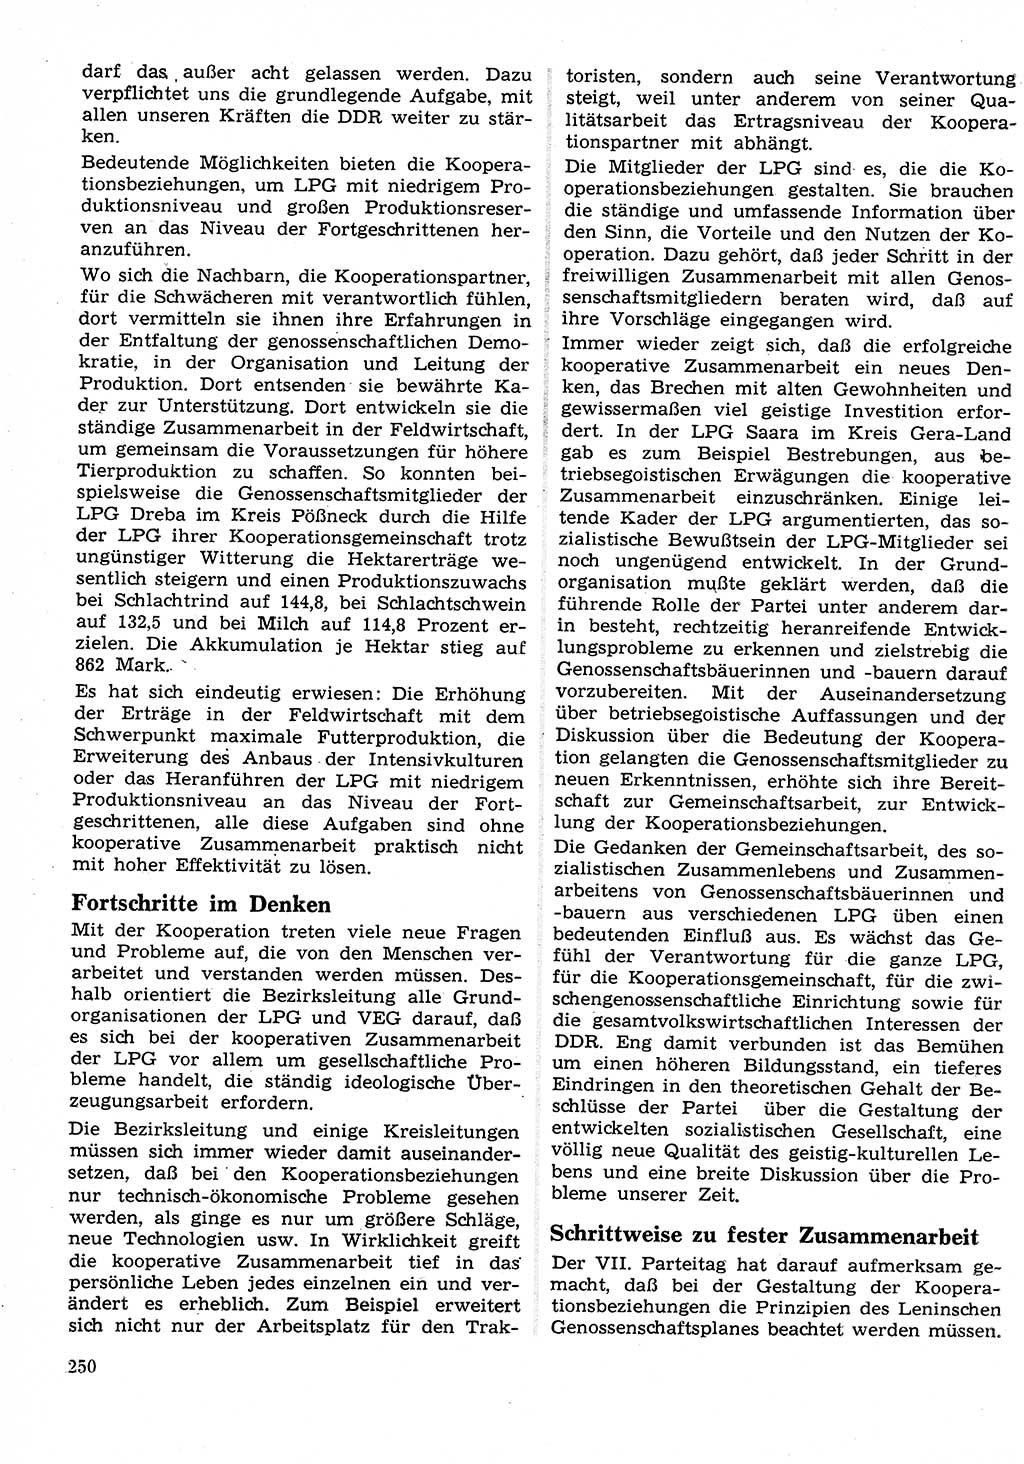 Neuer Weg (NW), Organ des Zentralkomitees (ZK) der SED (Sozialistische Einheitspartei Deutschlands) für Fragen des Parteilebens, 26. Jahrgang [Deutsche Demokratische Republik (DDR)] 1971, Seite 250 (NW ZK SED DDR 1971, S. 250)